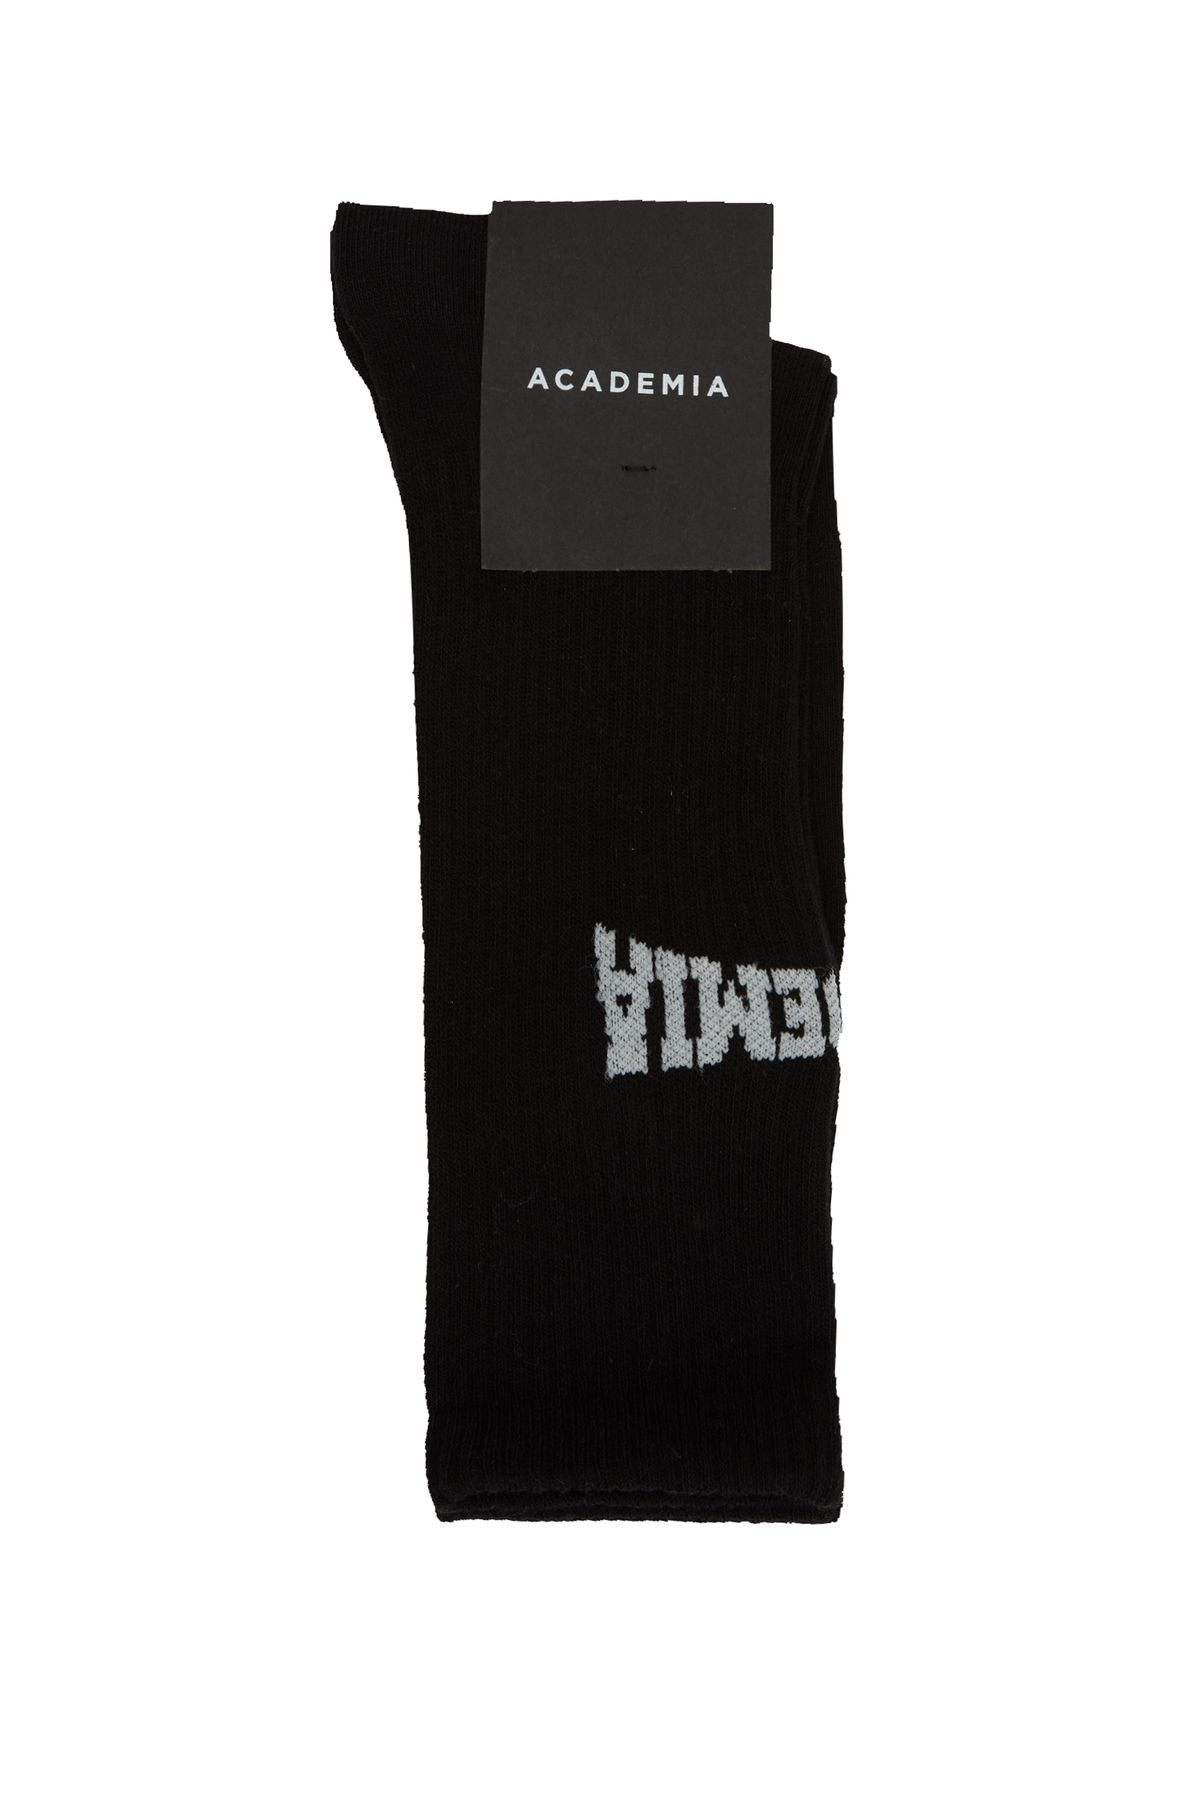 Academia Siyah Logolu Erkek Çorap